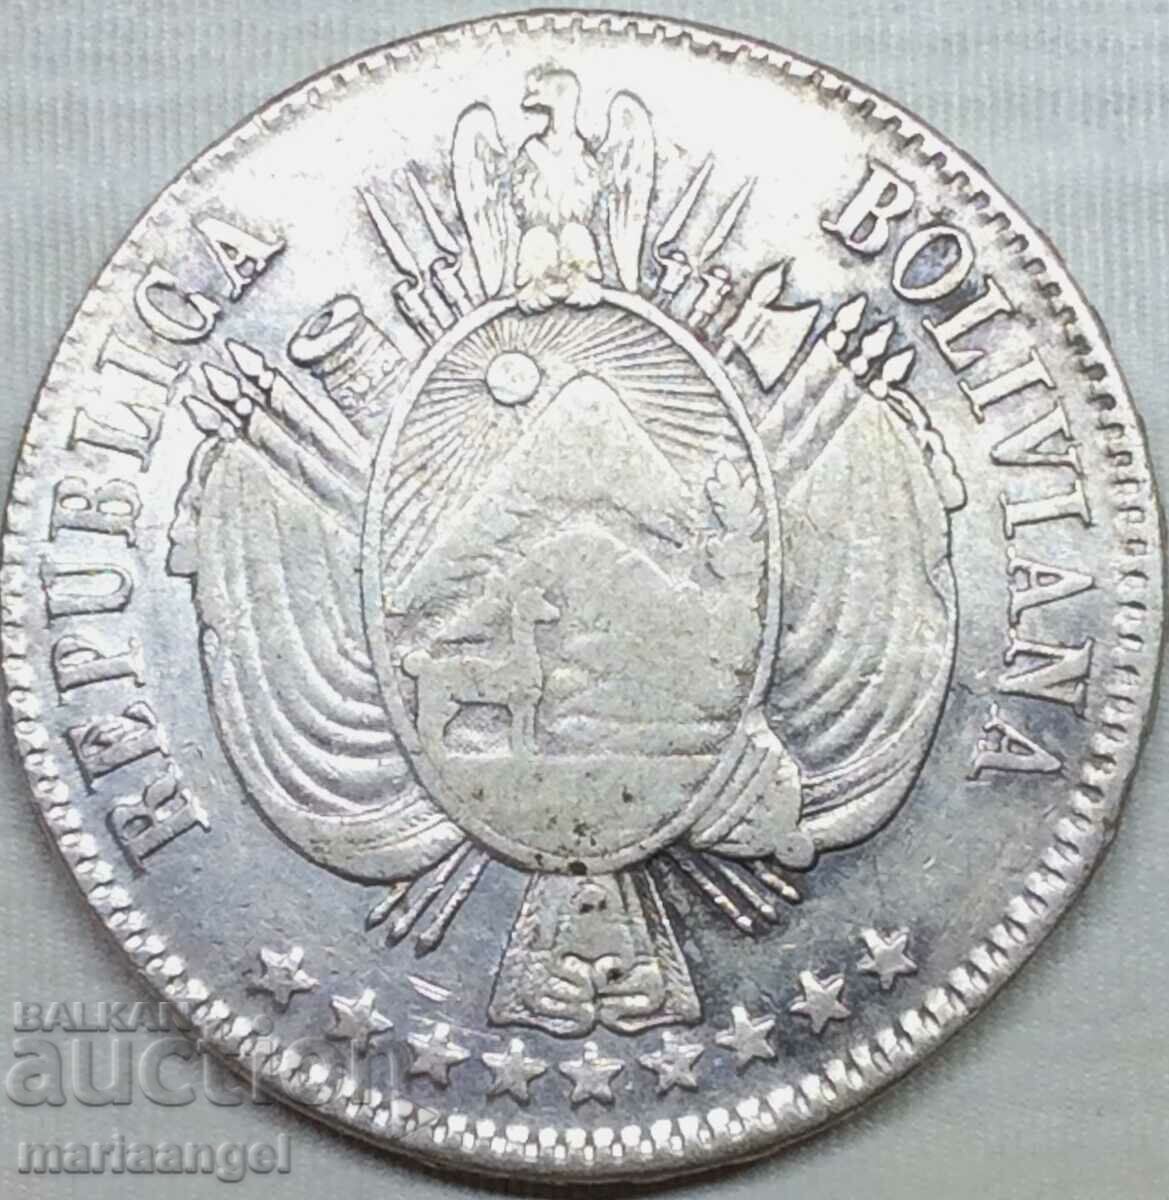 Βολιβία 1865 1 μπολιβιάνο 24,85 g ασήμι - εξαιρετικά σπάνιο